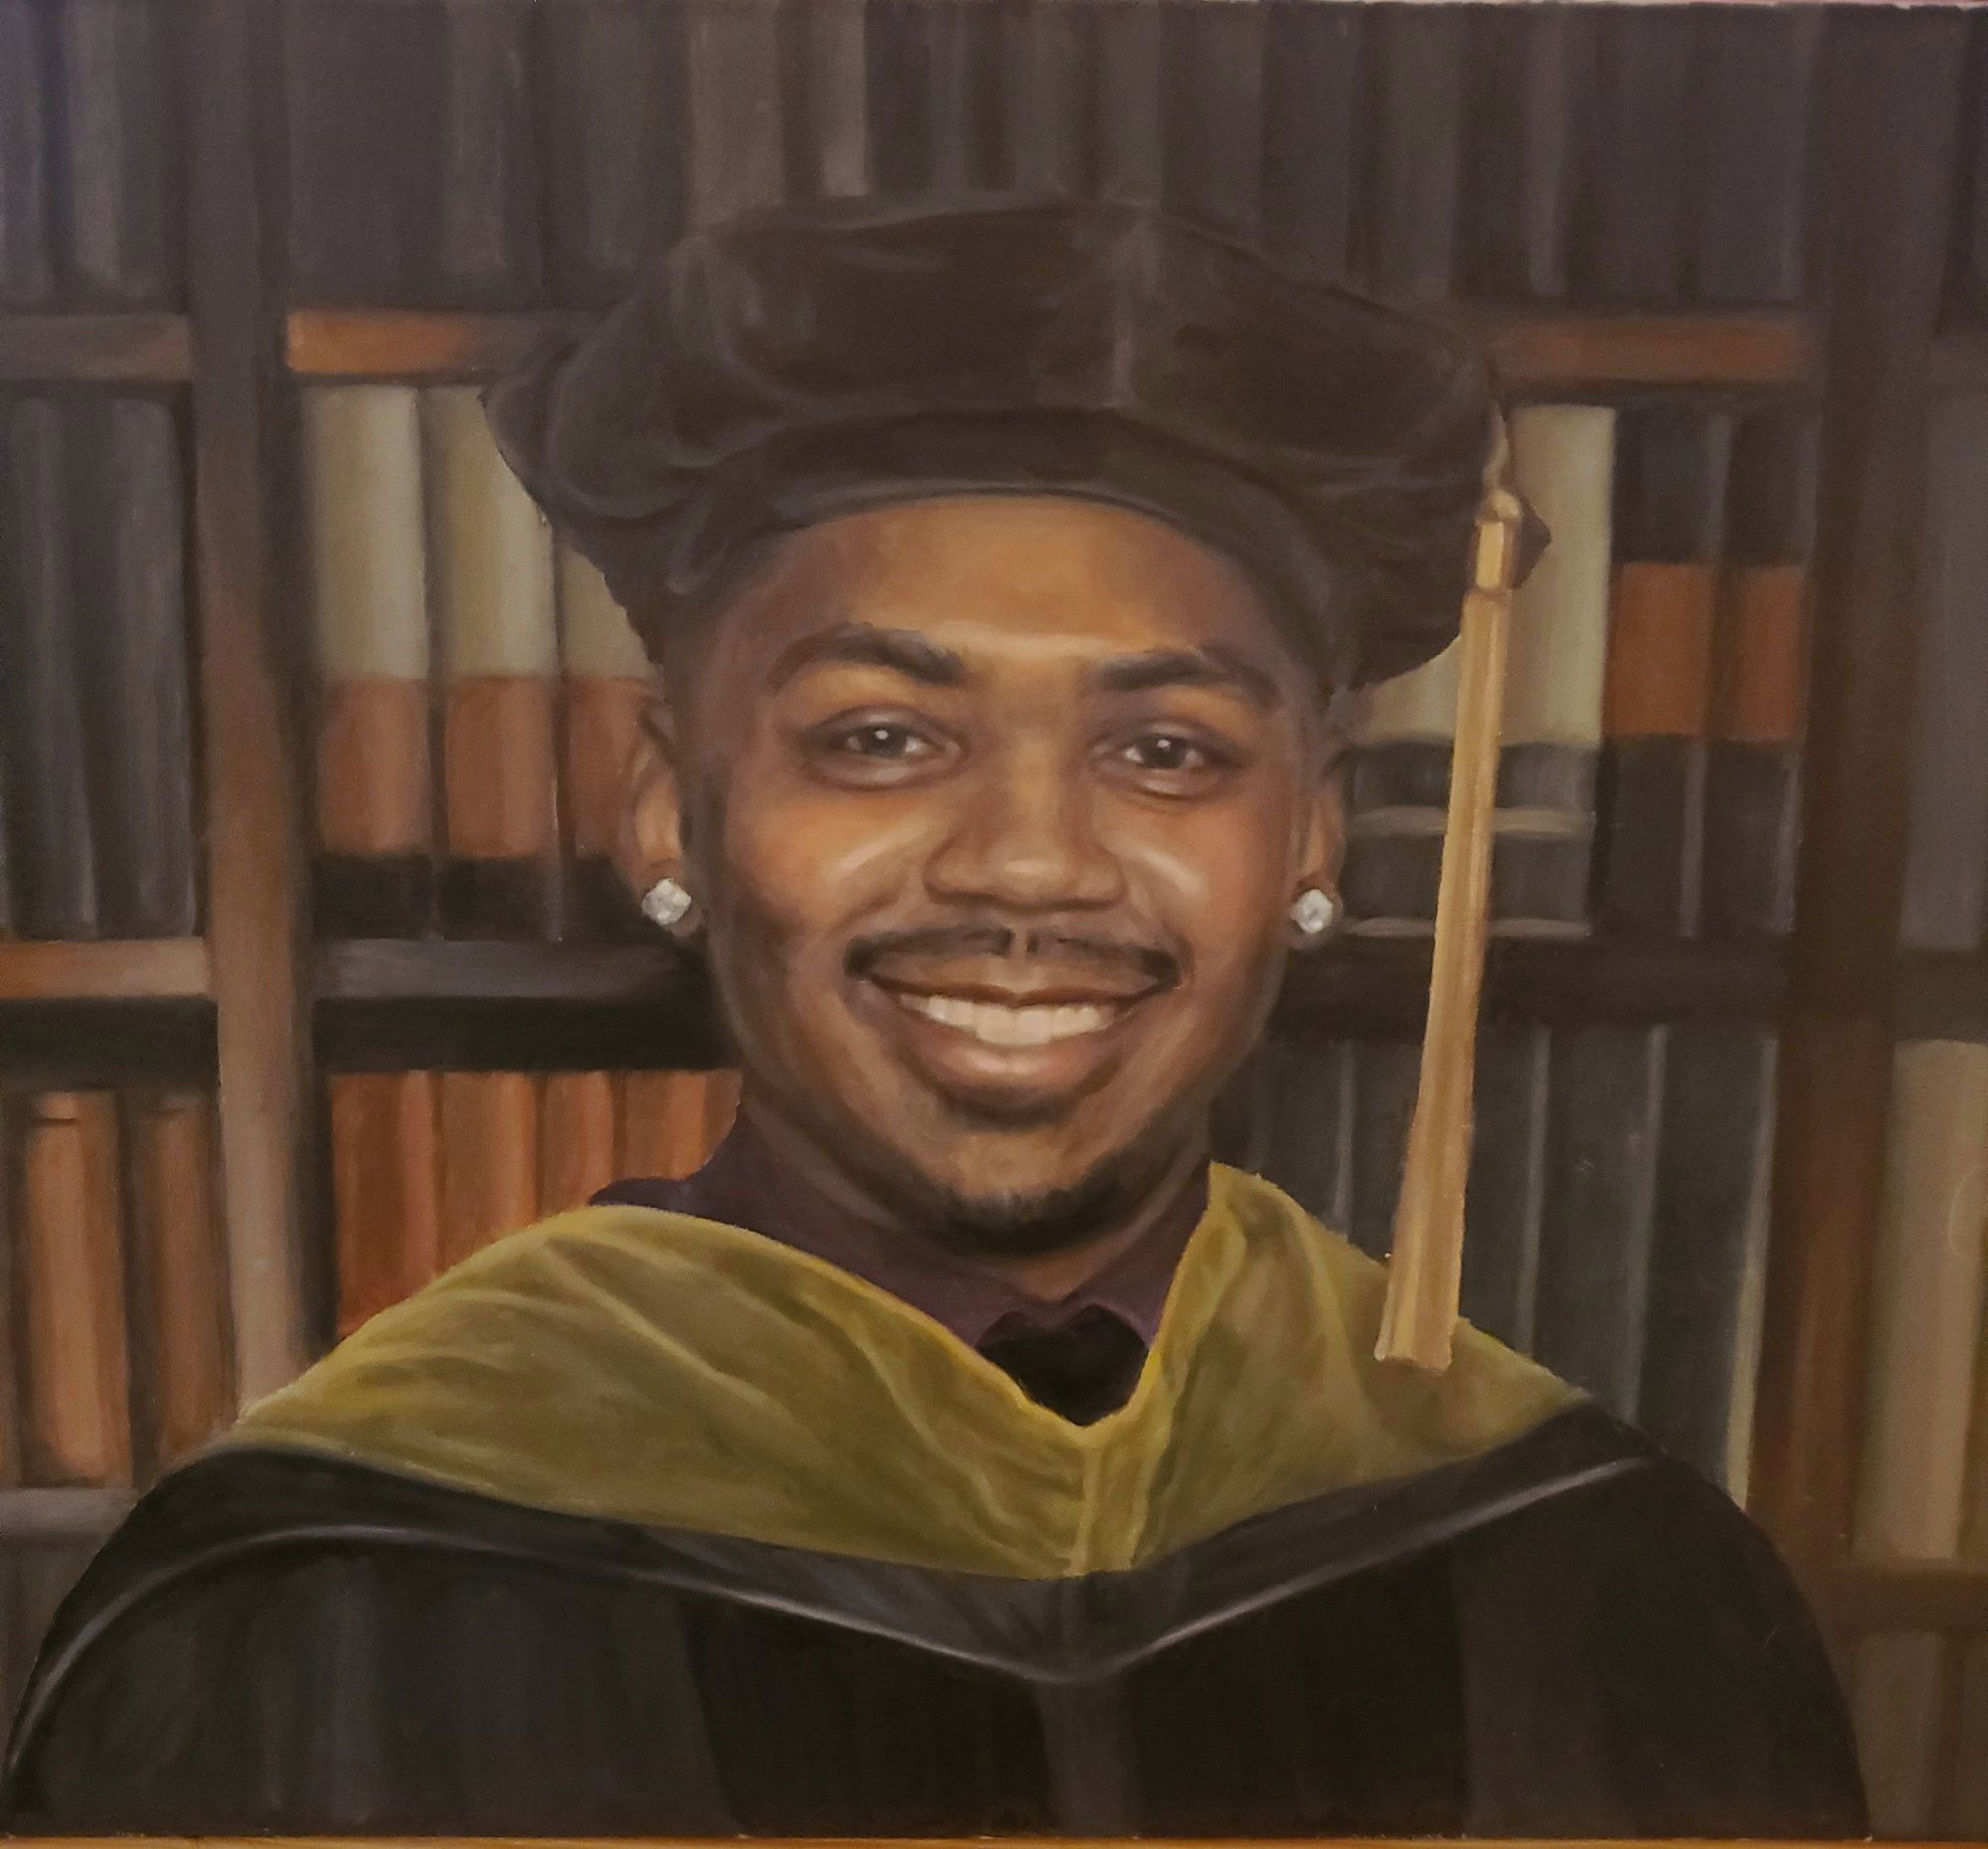 Portrait of a Graduate